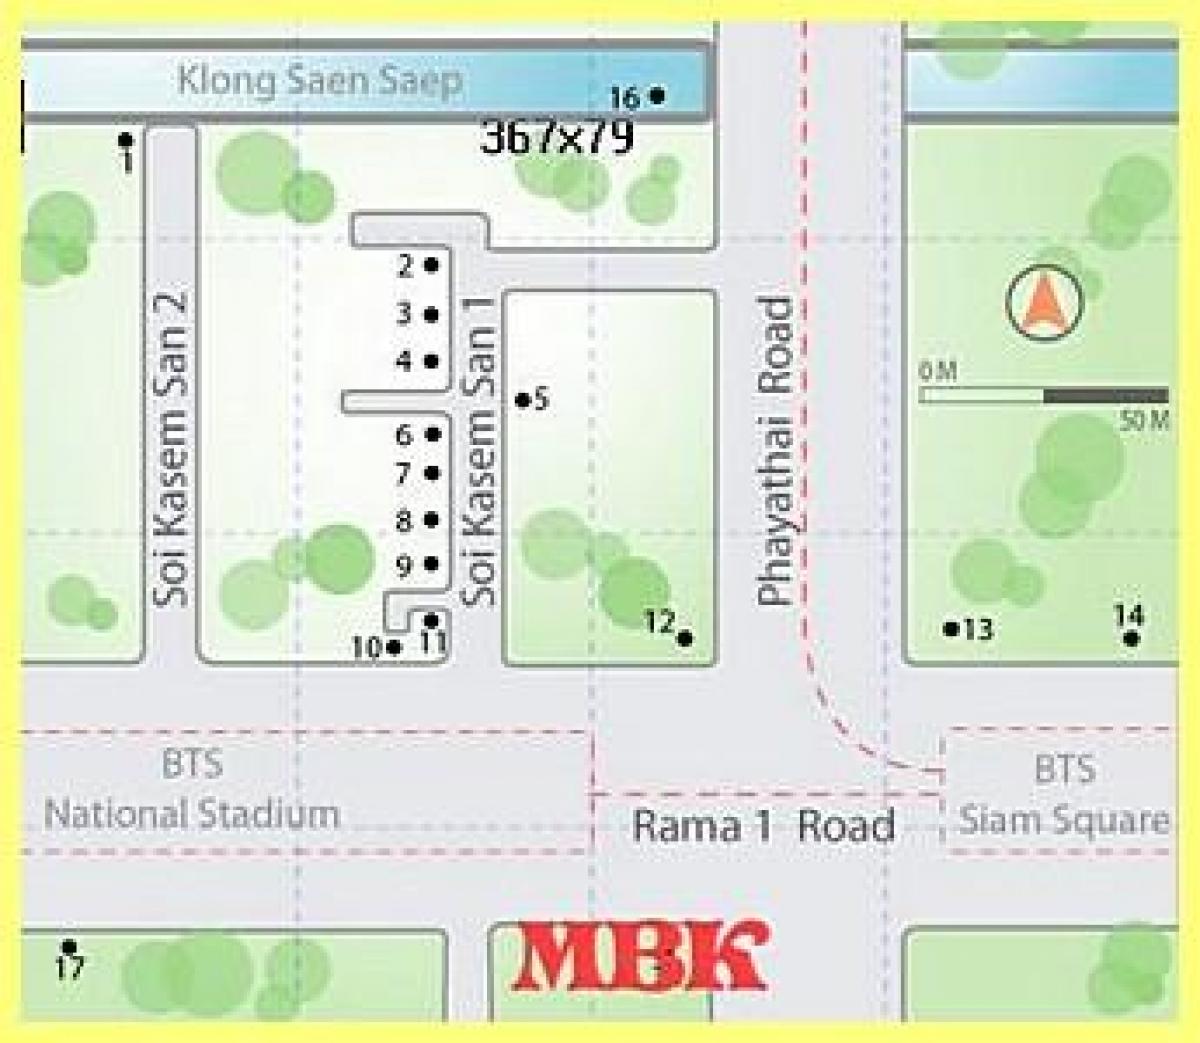 de mbk shopping mall in bangkok kaart